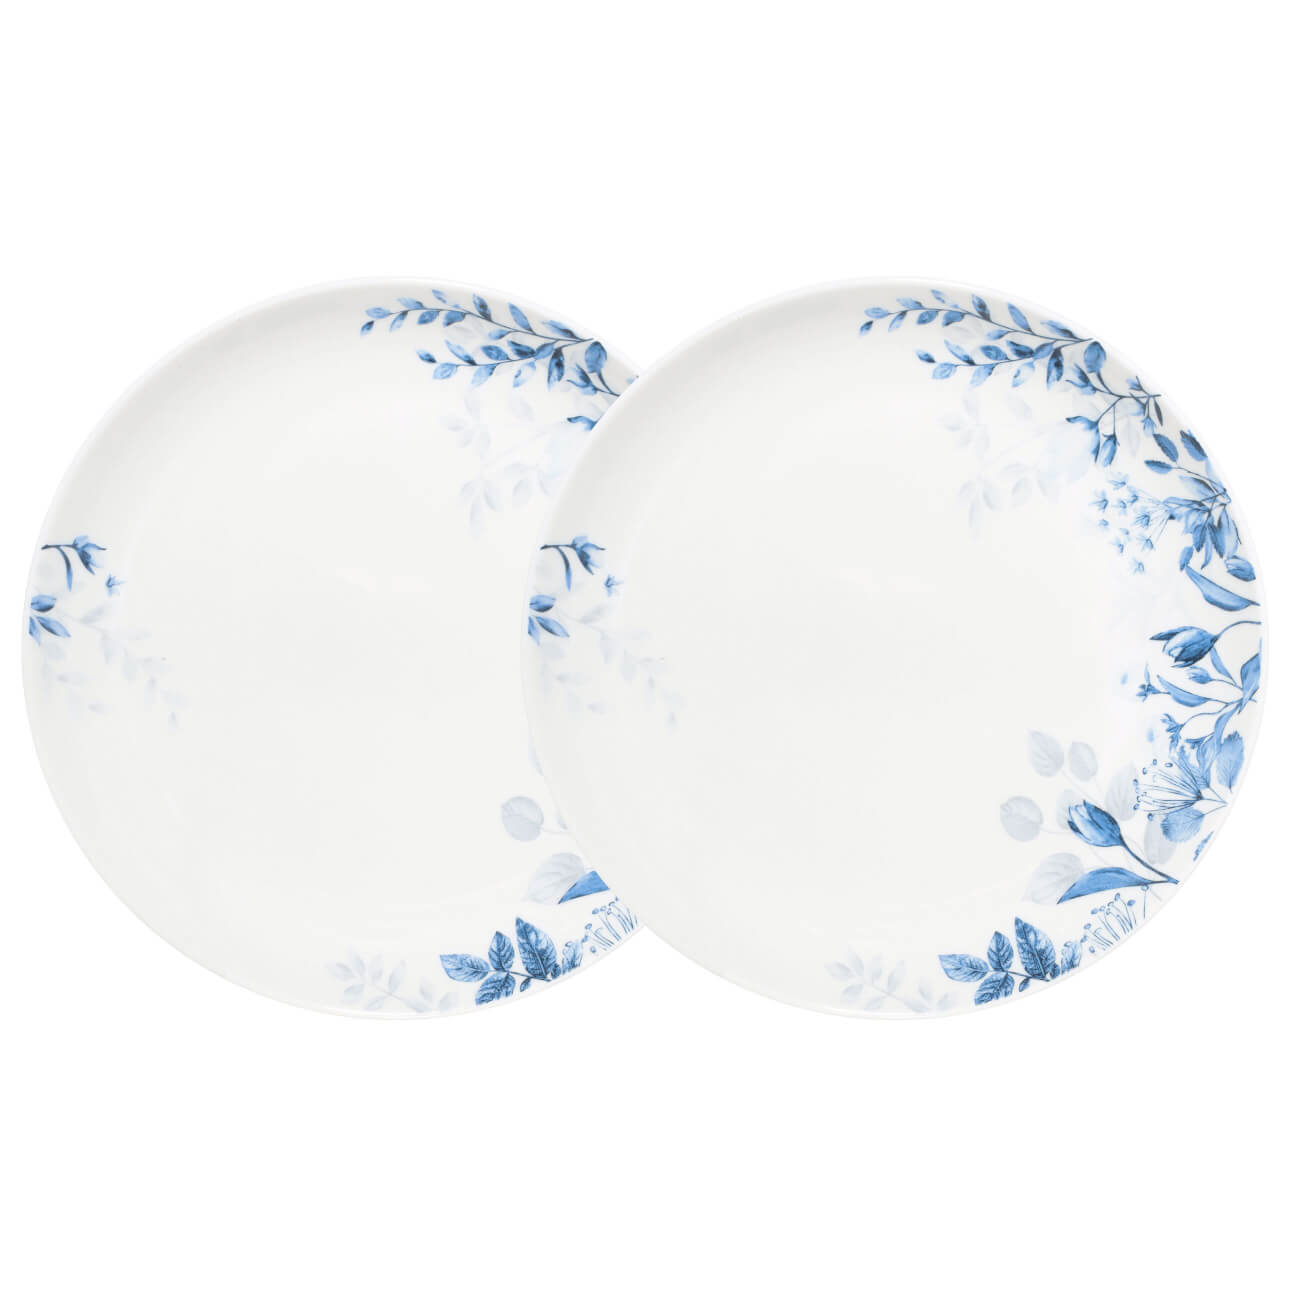 Тарелка закусочная, 21 см, 2 шт, фарфор N, белая, Синие цветы, Royal flower изображение № 1